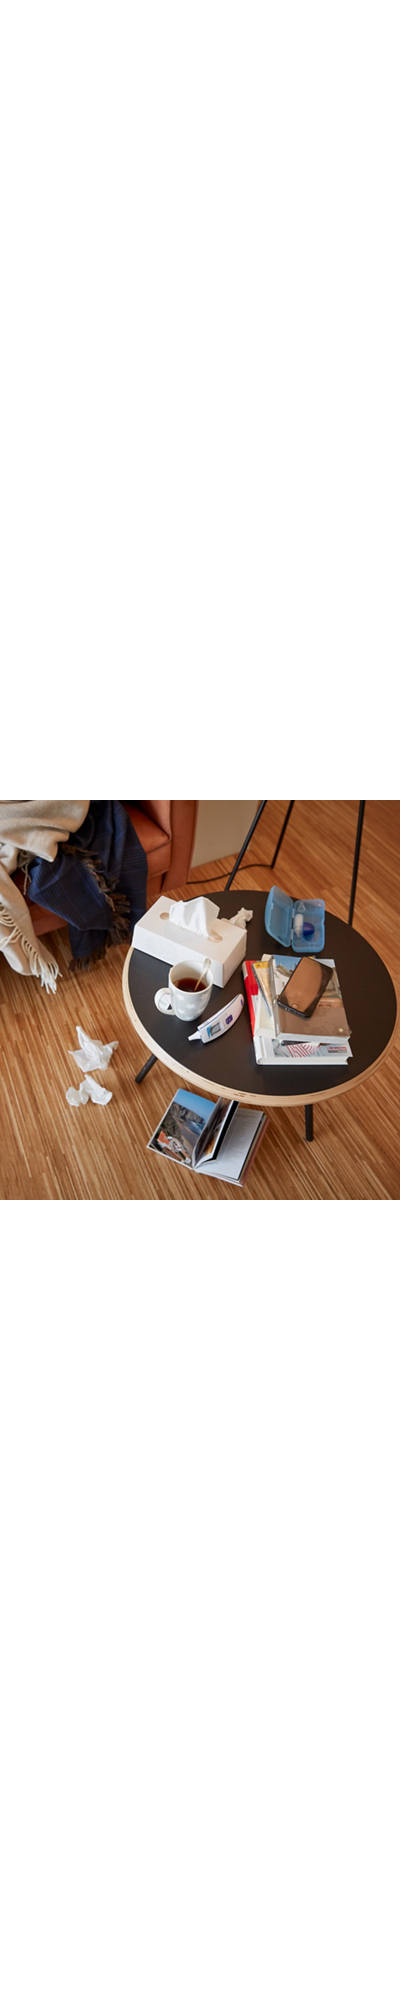 Tisch mit Erklältungsutensilien wie Fiebermesser, Tee und Kleenex-Box